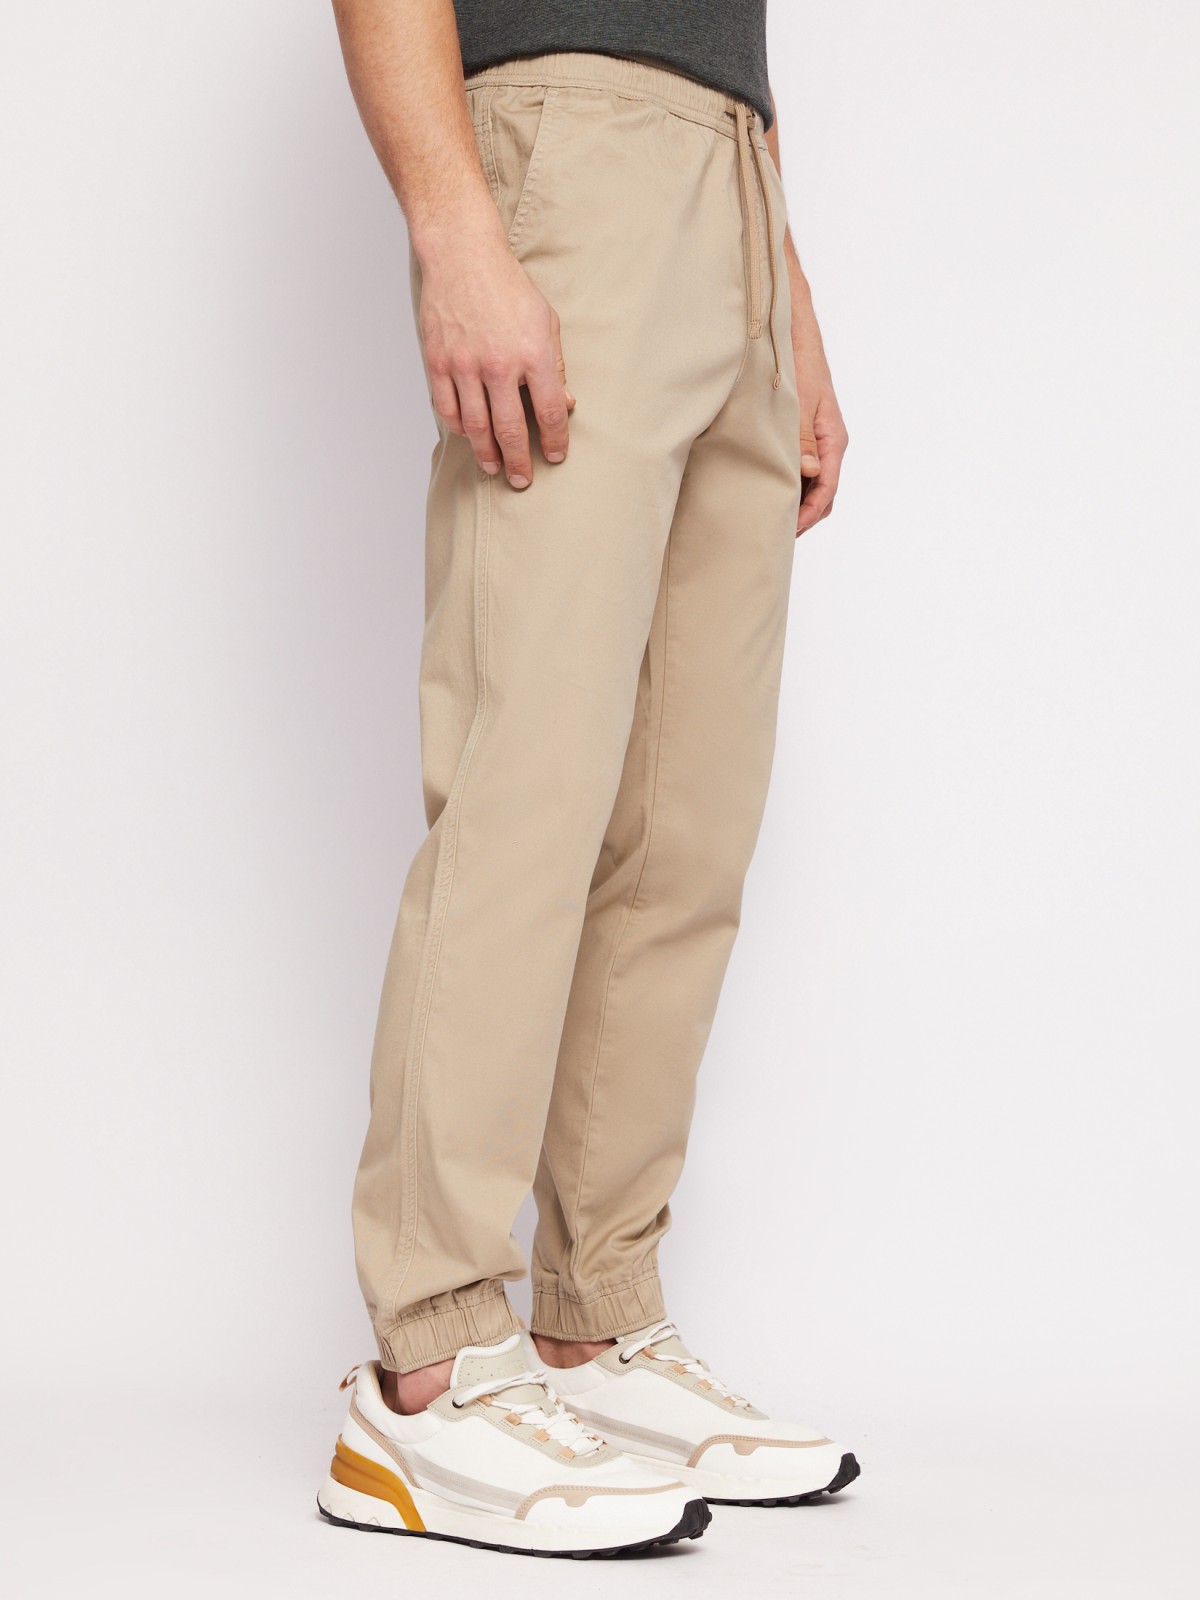 Прямые брюки-джоггеры из хлопка на резинке zolla N1421730L012, цвет бежевый, размер 34 - фото 5